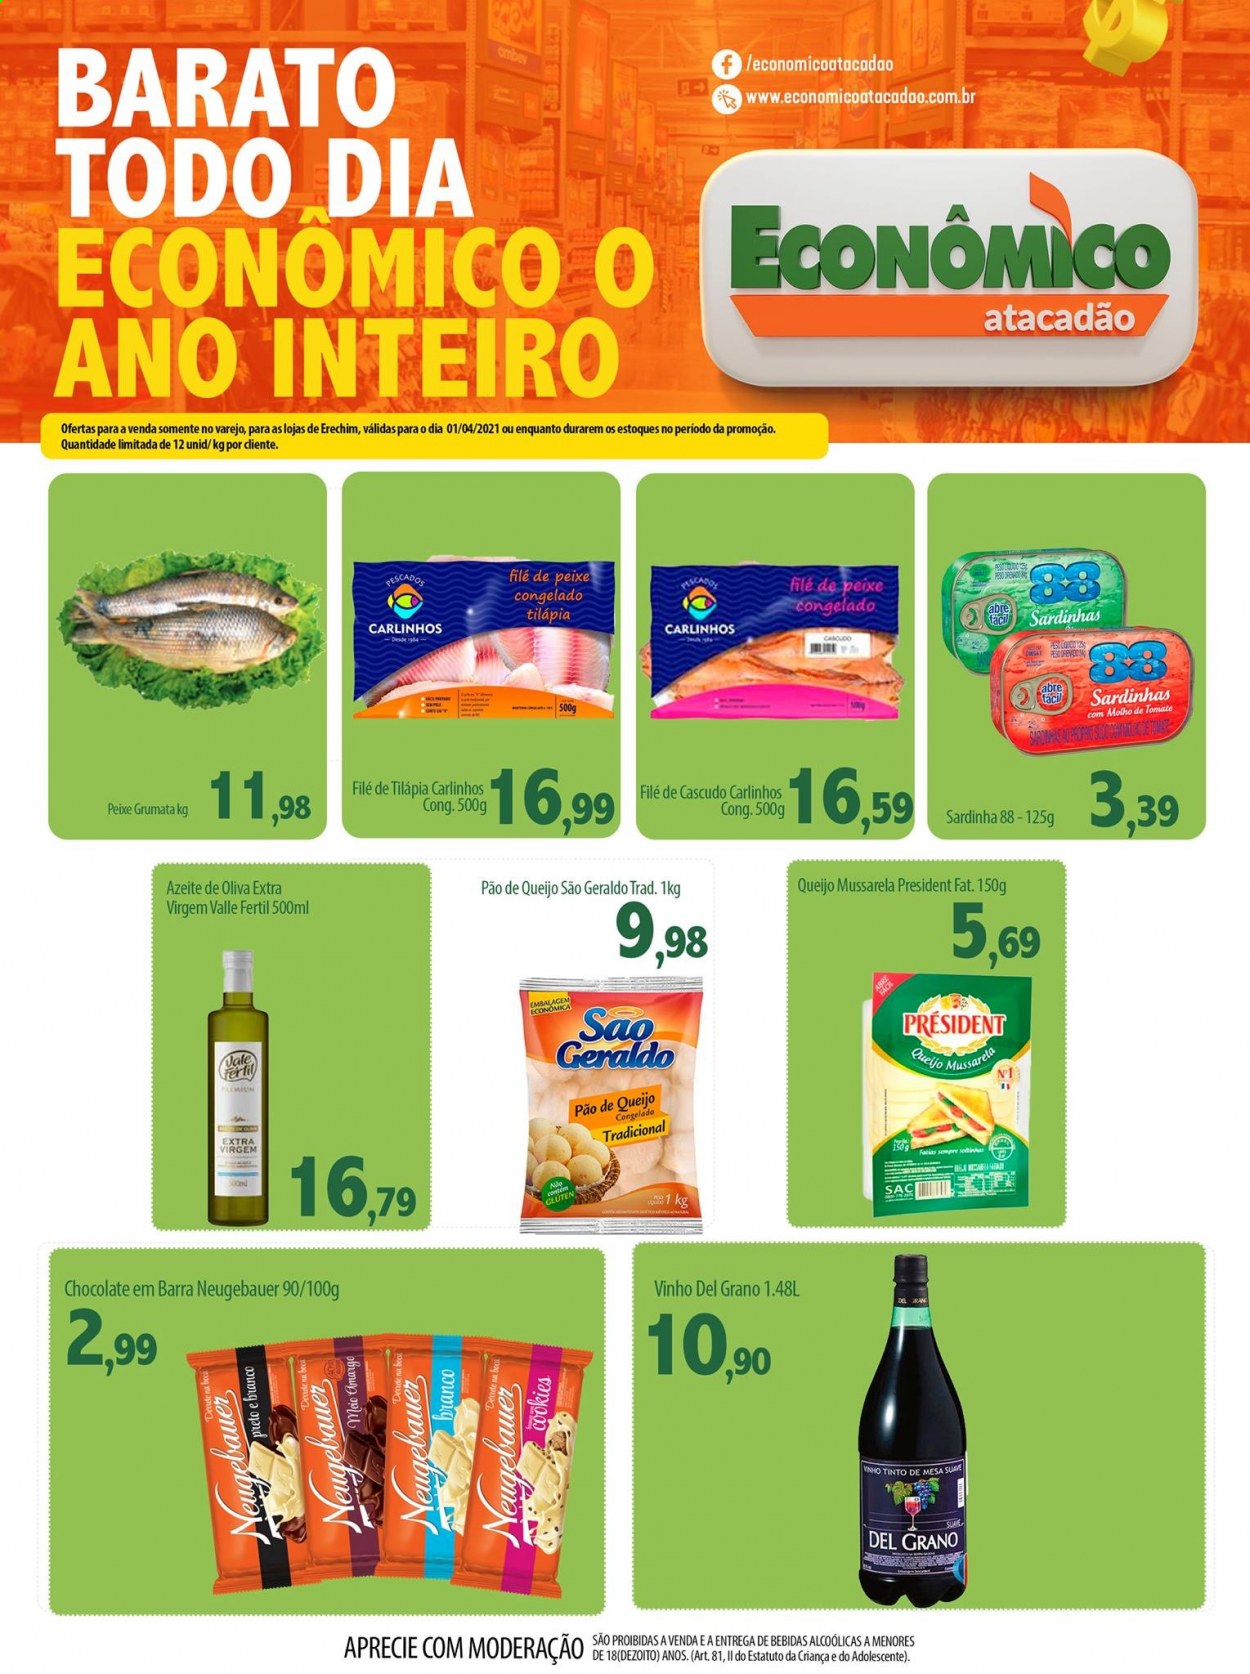 thumbnail - Folheto Econômico Atacadão - 01/04/2021 - 01/04/2021 - Produtos em promoção - pão de queijo, pão, tilapia, mozzarella, chocolate, Neugebauer, sardinhas, azeite de oliva, vinho. Página 1.